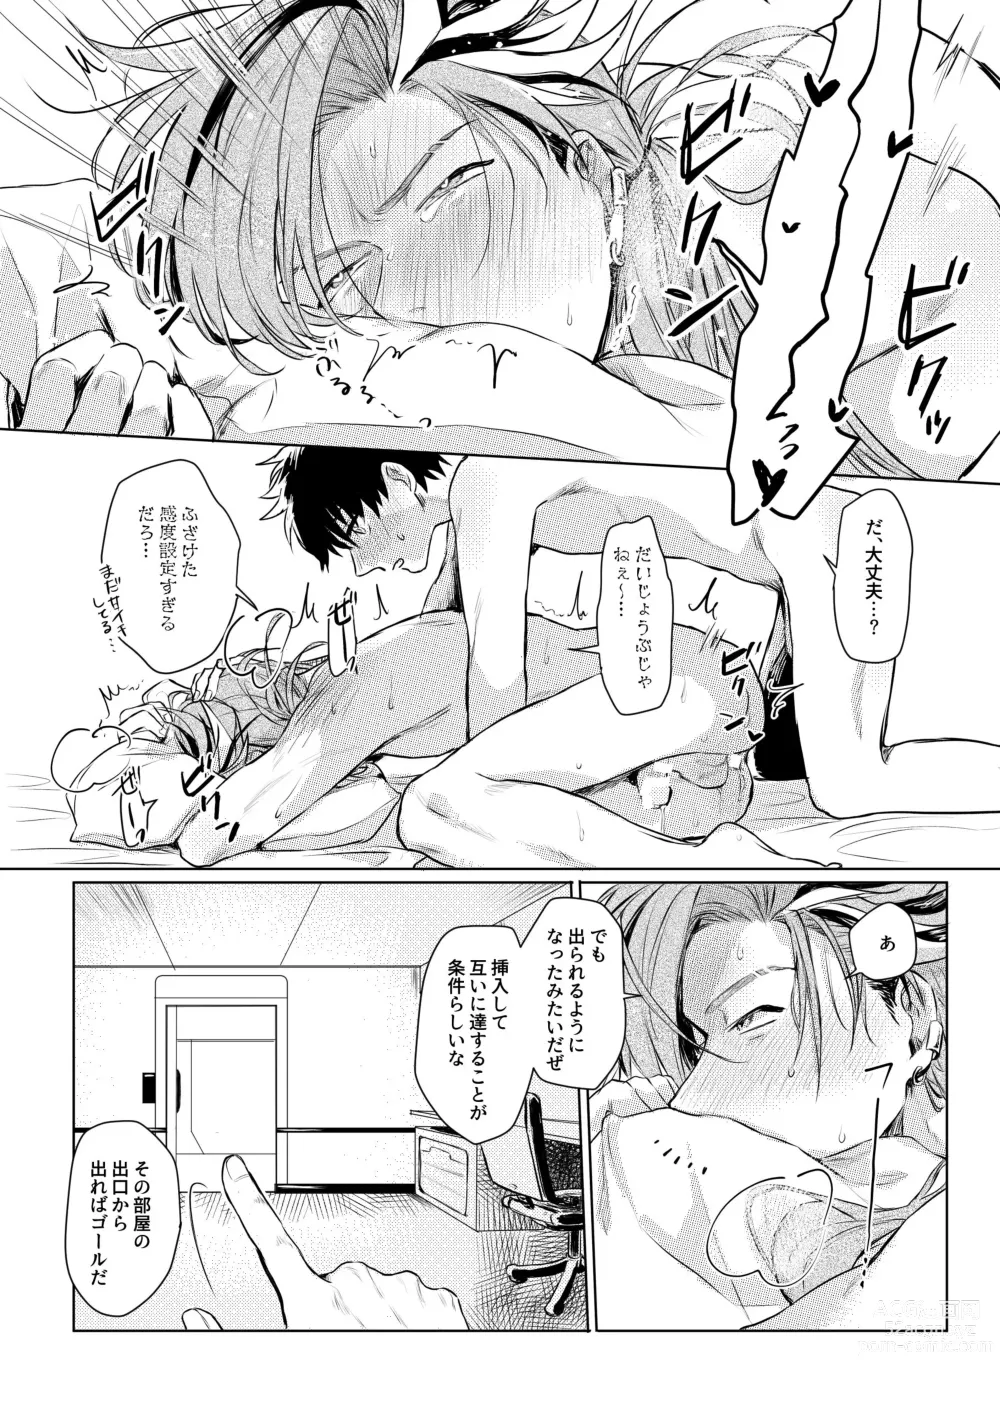 Page 12 of doujinshi Konna Hazude wa!